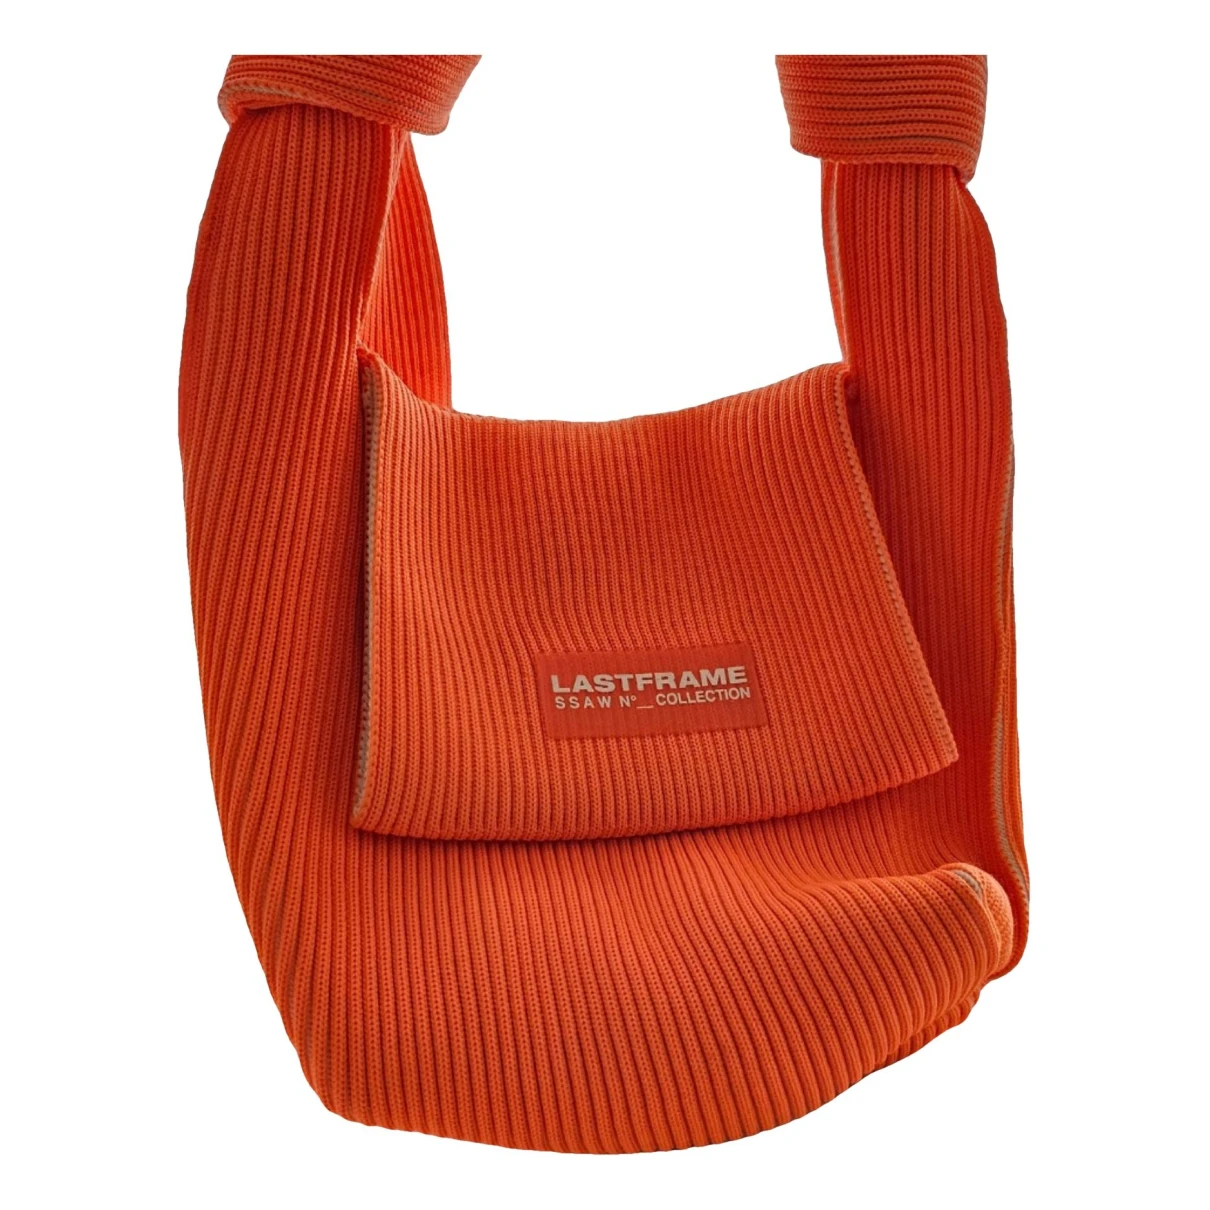 Pre-owned Last Frame Handbag In Orange